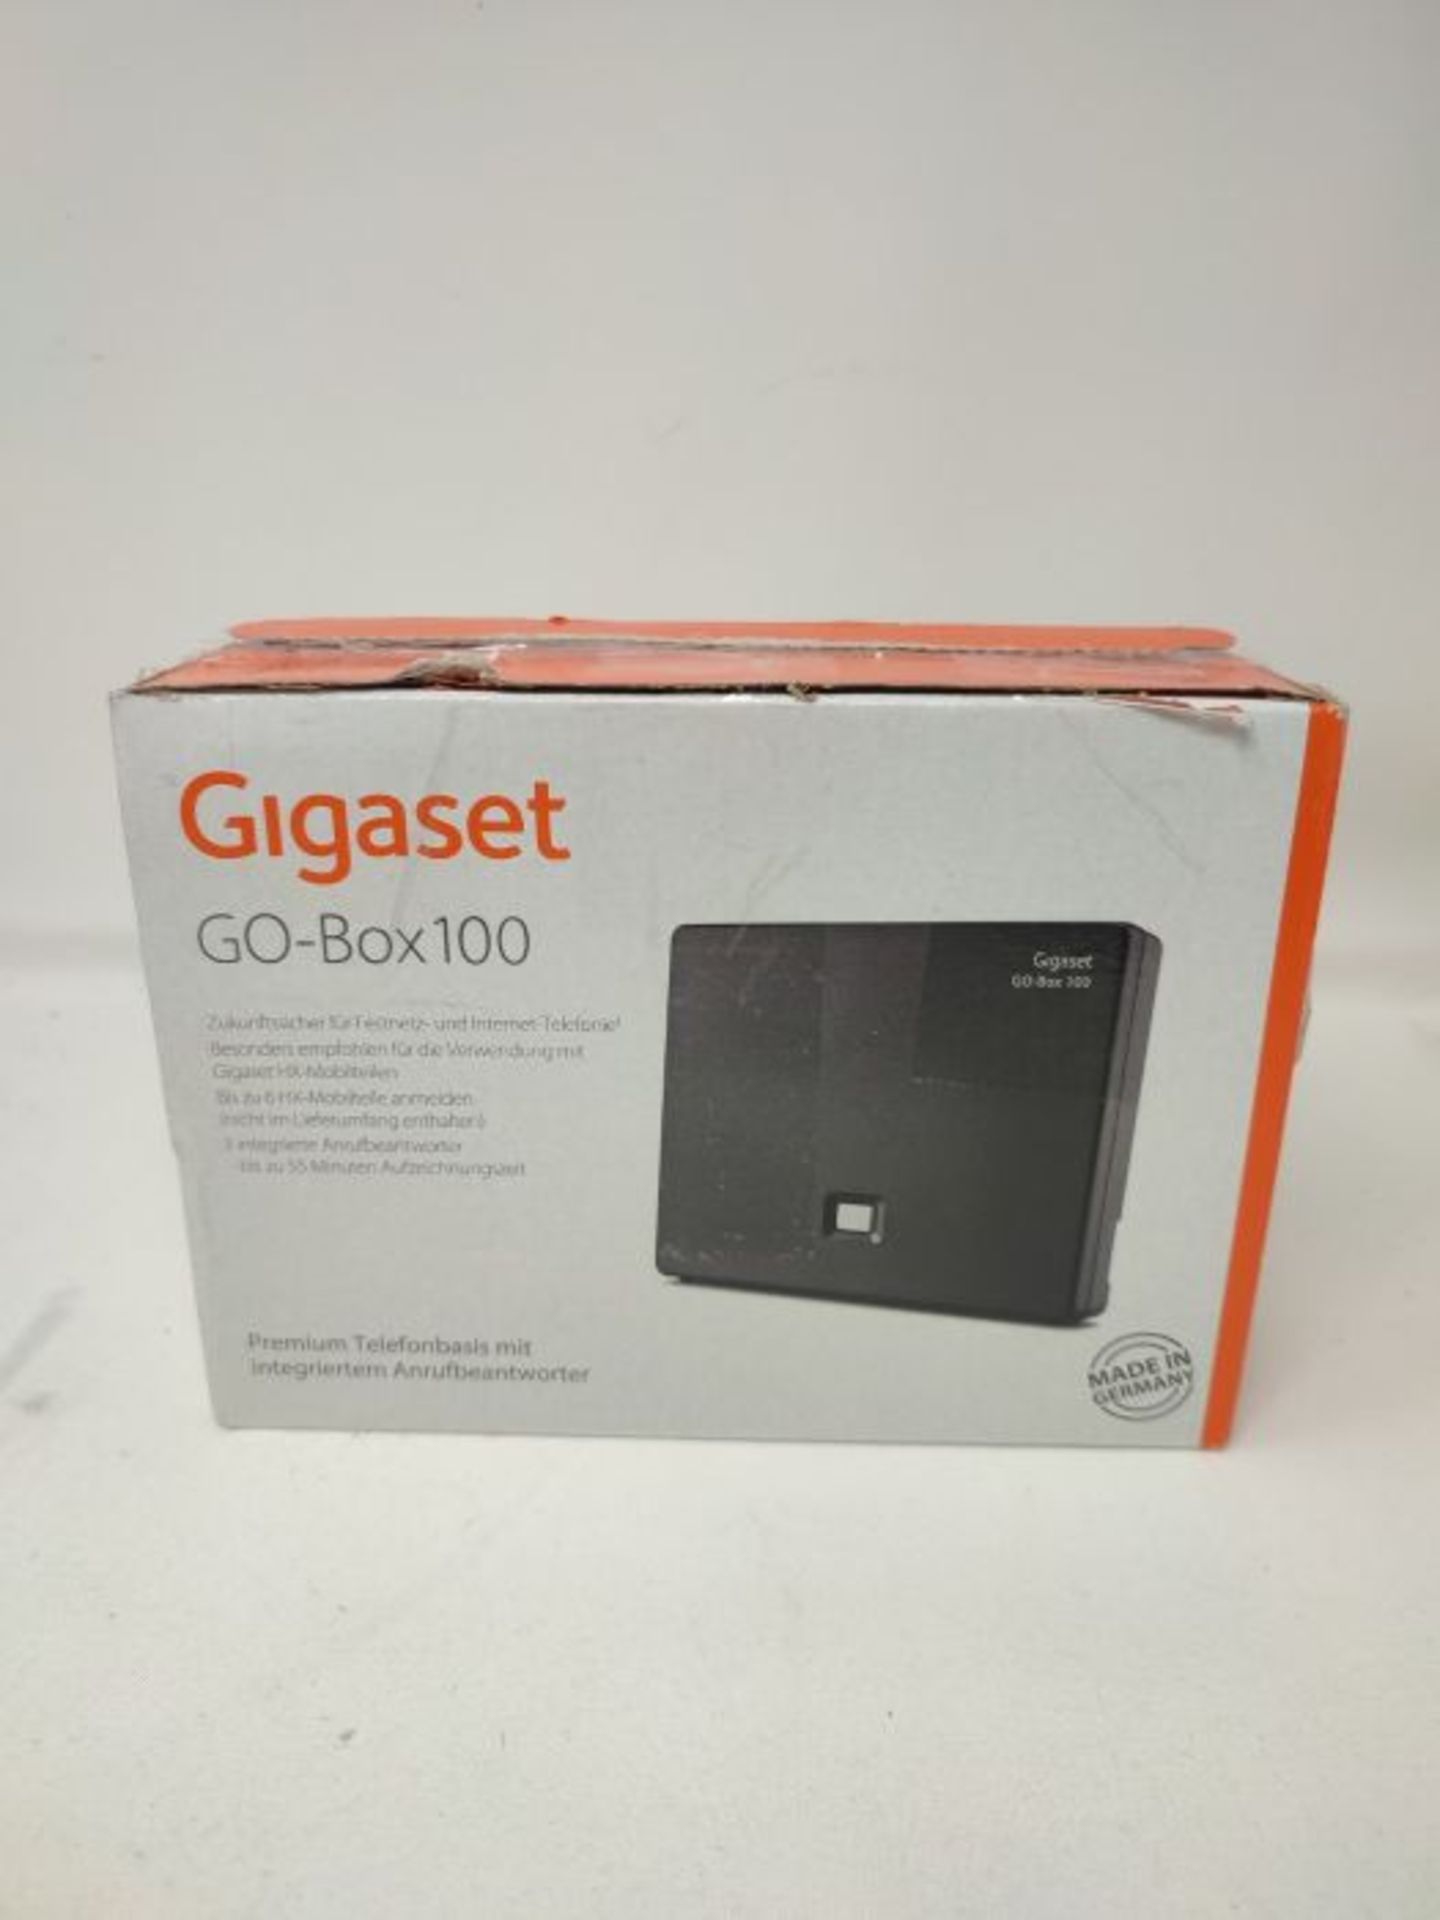 Gigaset GO-Box 100 black - Image 2 of 3